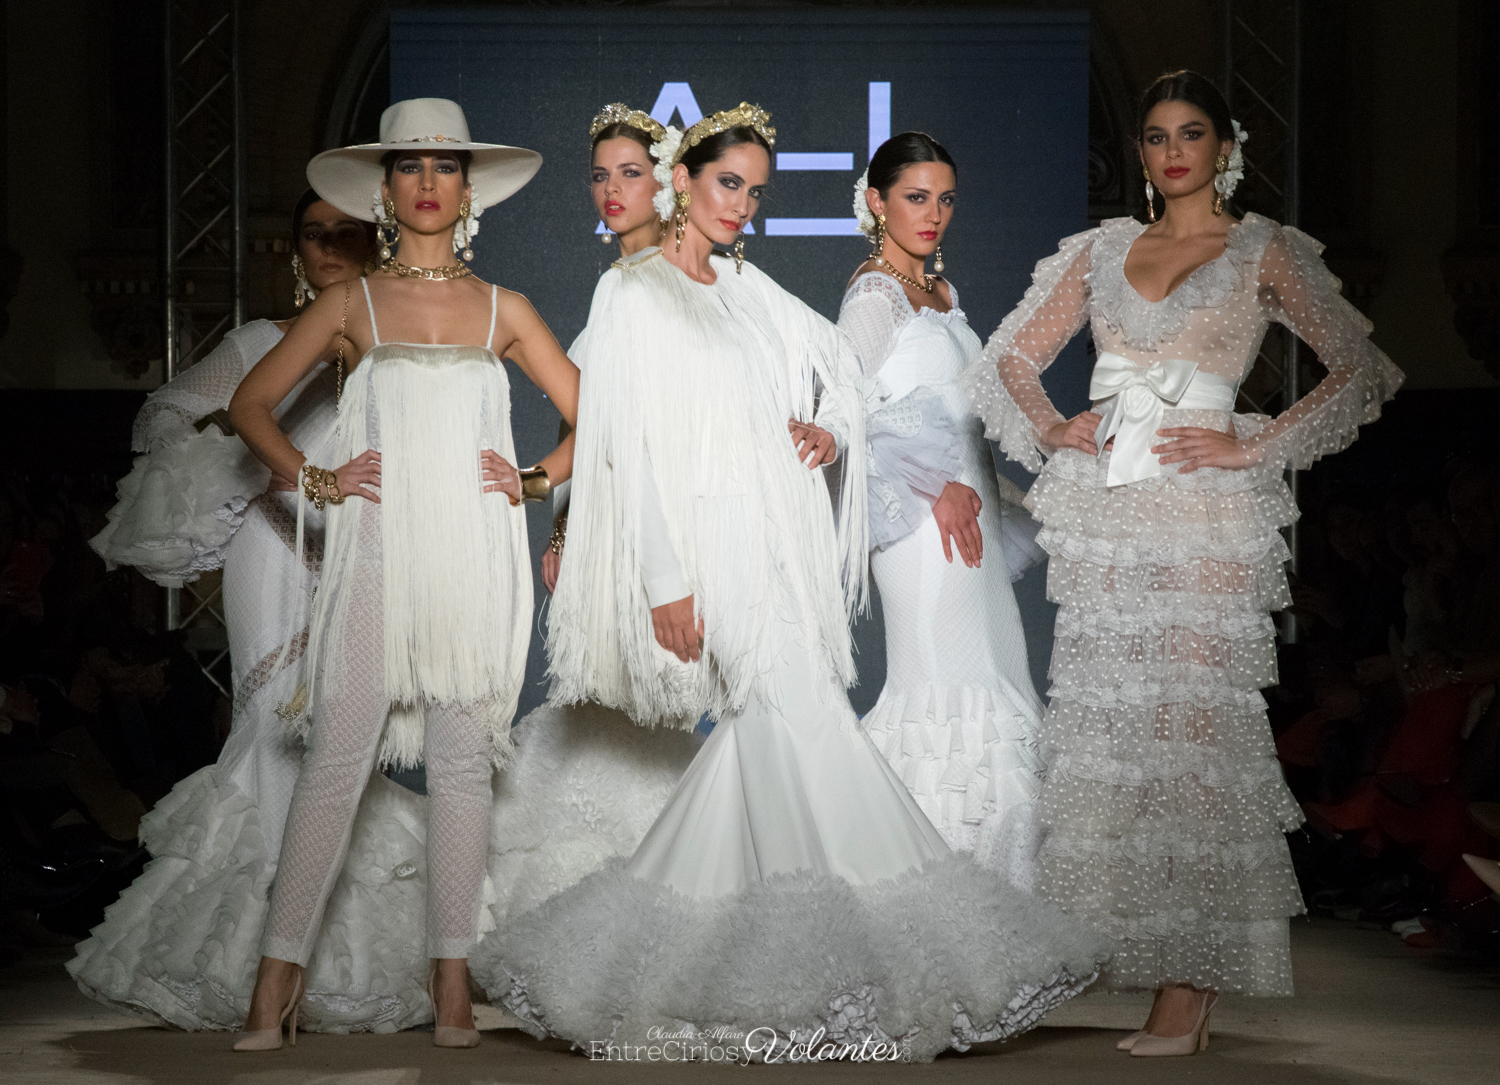 Tendencias flamencas 2019: 'En color blanco' Entre Cirios y Volantes